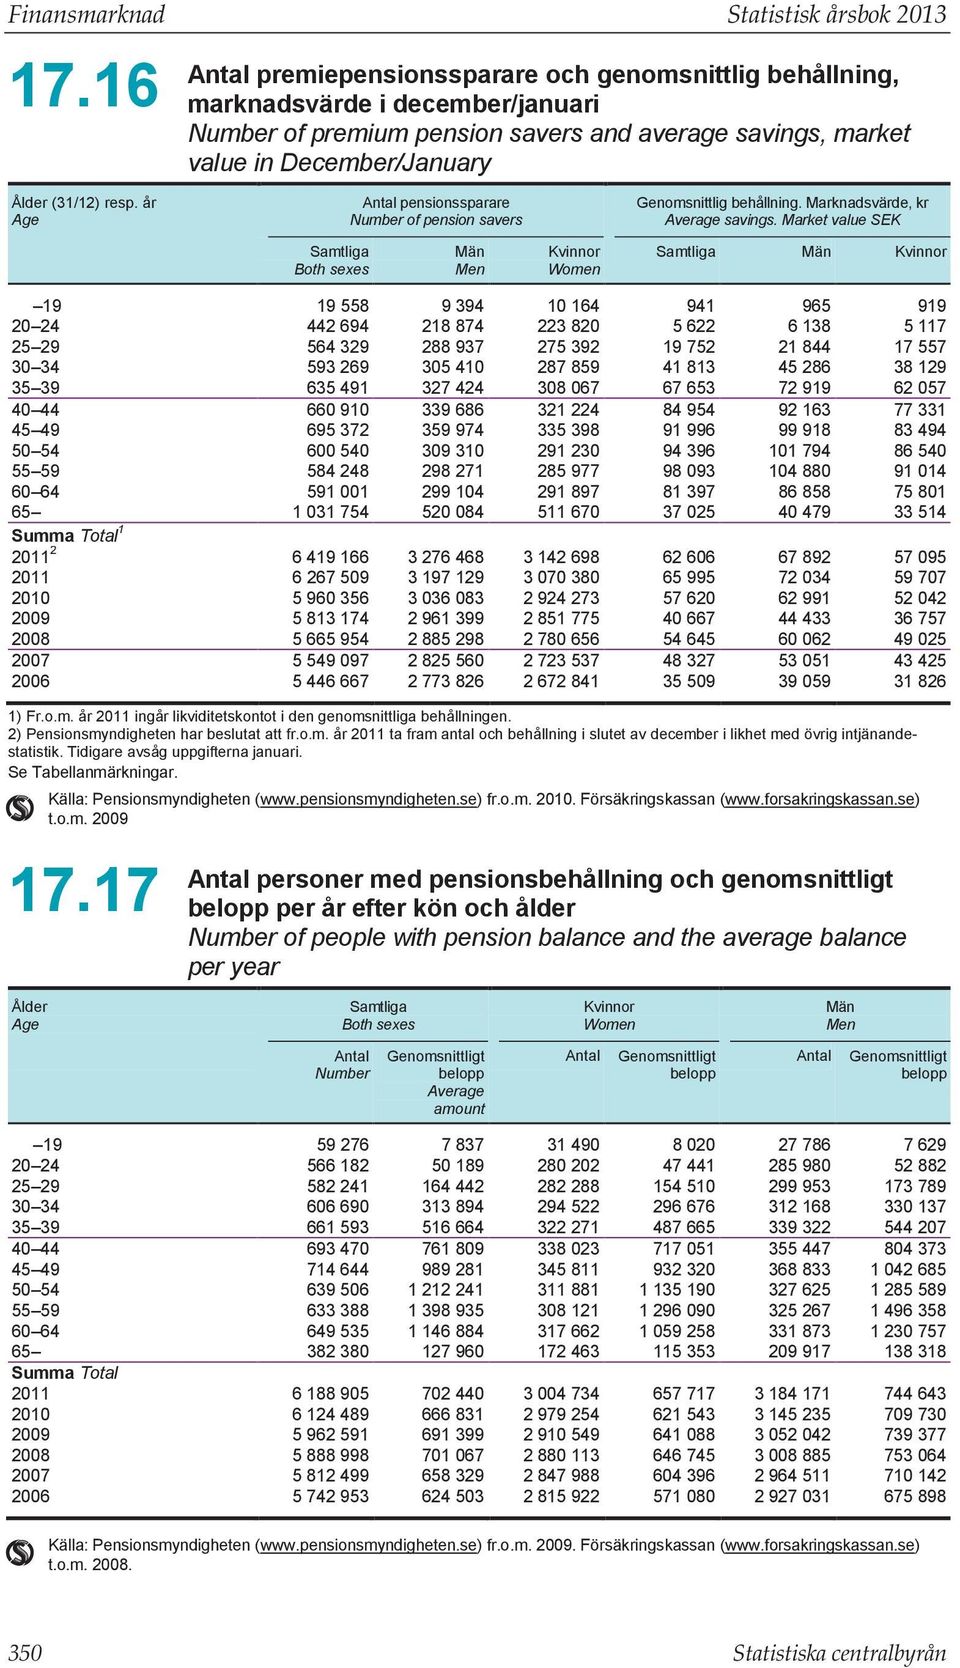 år Age Antal pensionssparare Number of pension savers Genomsnittlig behållning. Marknadsvärde, kr Average savings.